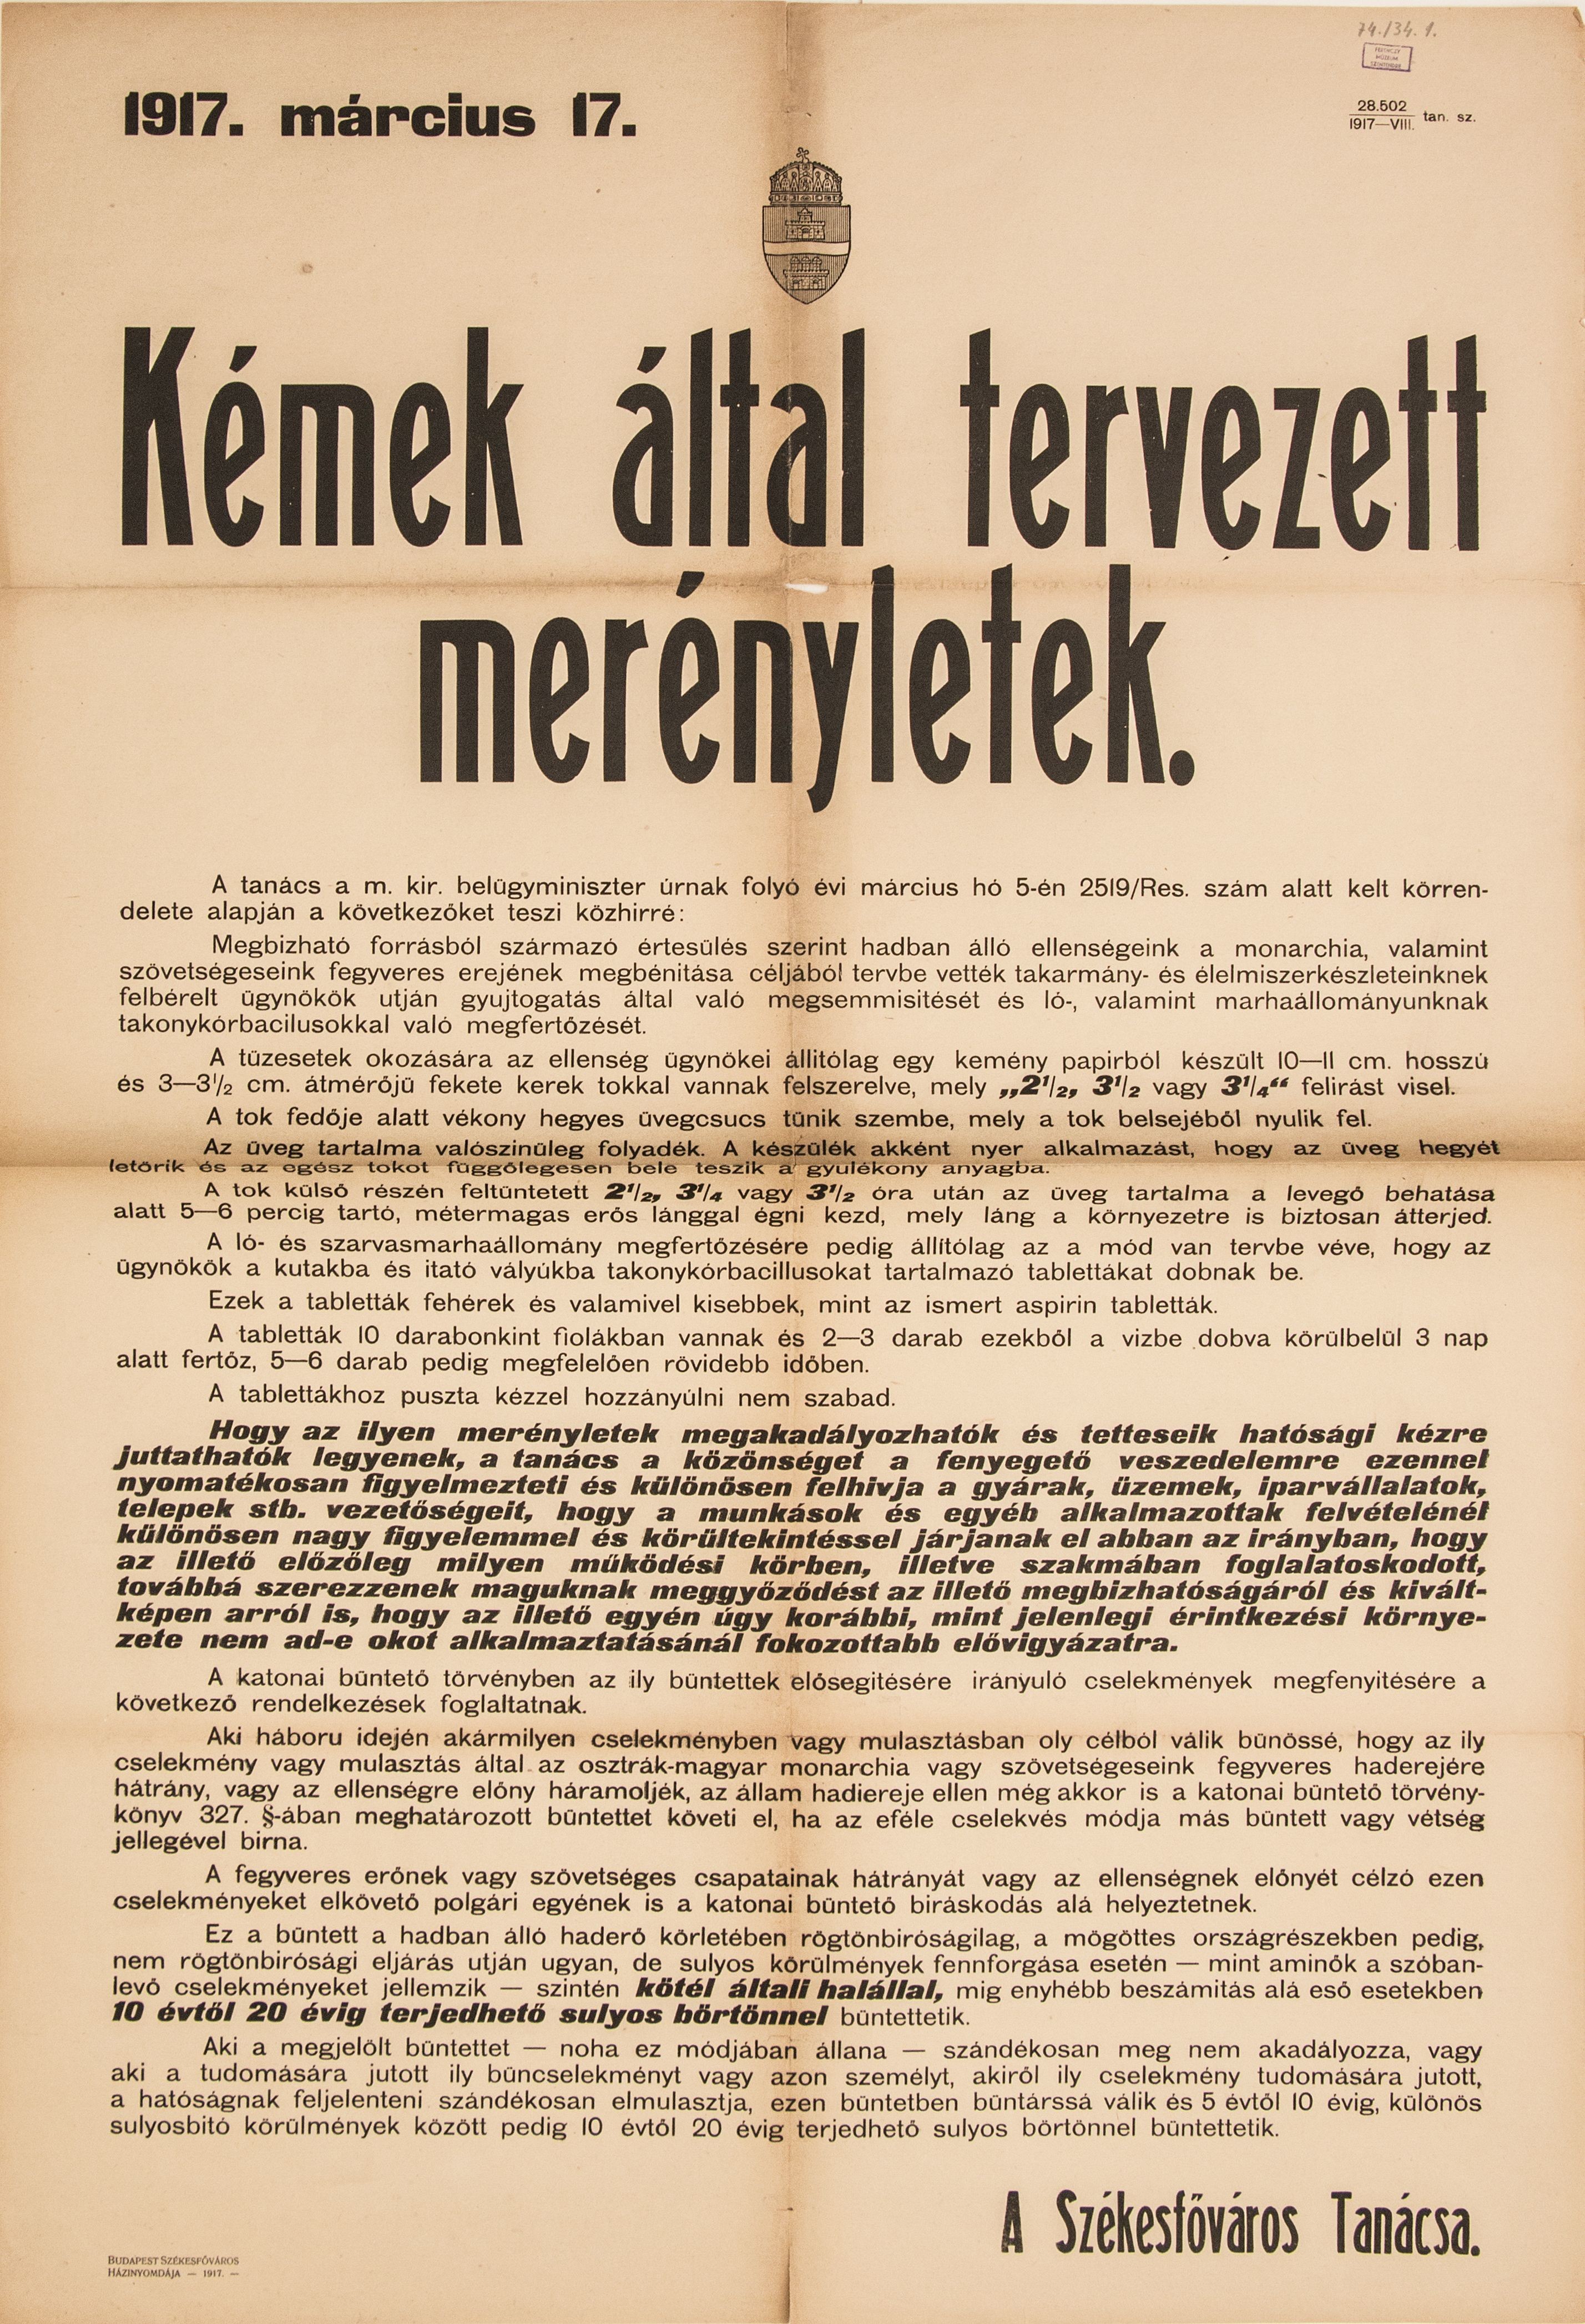 Kémek által tervezett merényletek, 1917.03.17. (hirdetmény) (Ferenczy Múzeumi Centrum CC BY-NC-SA)